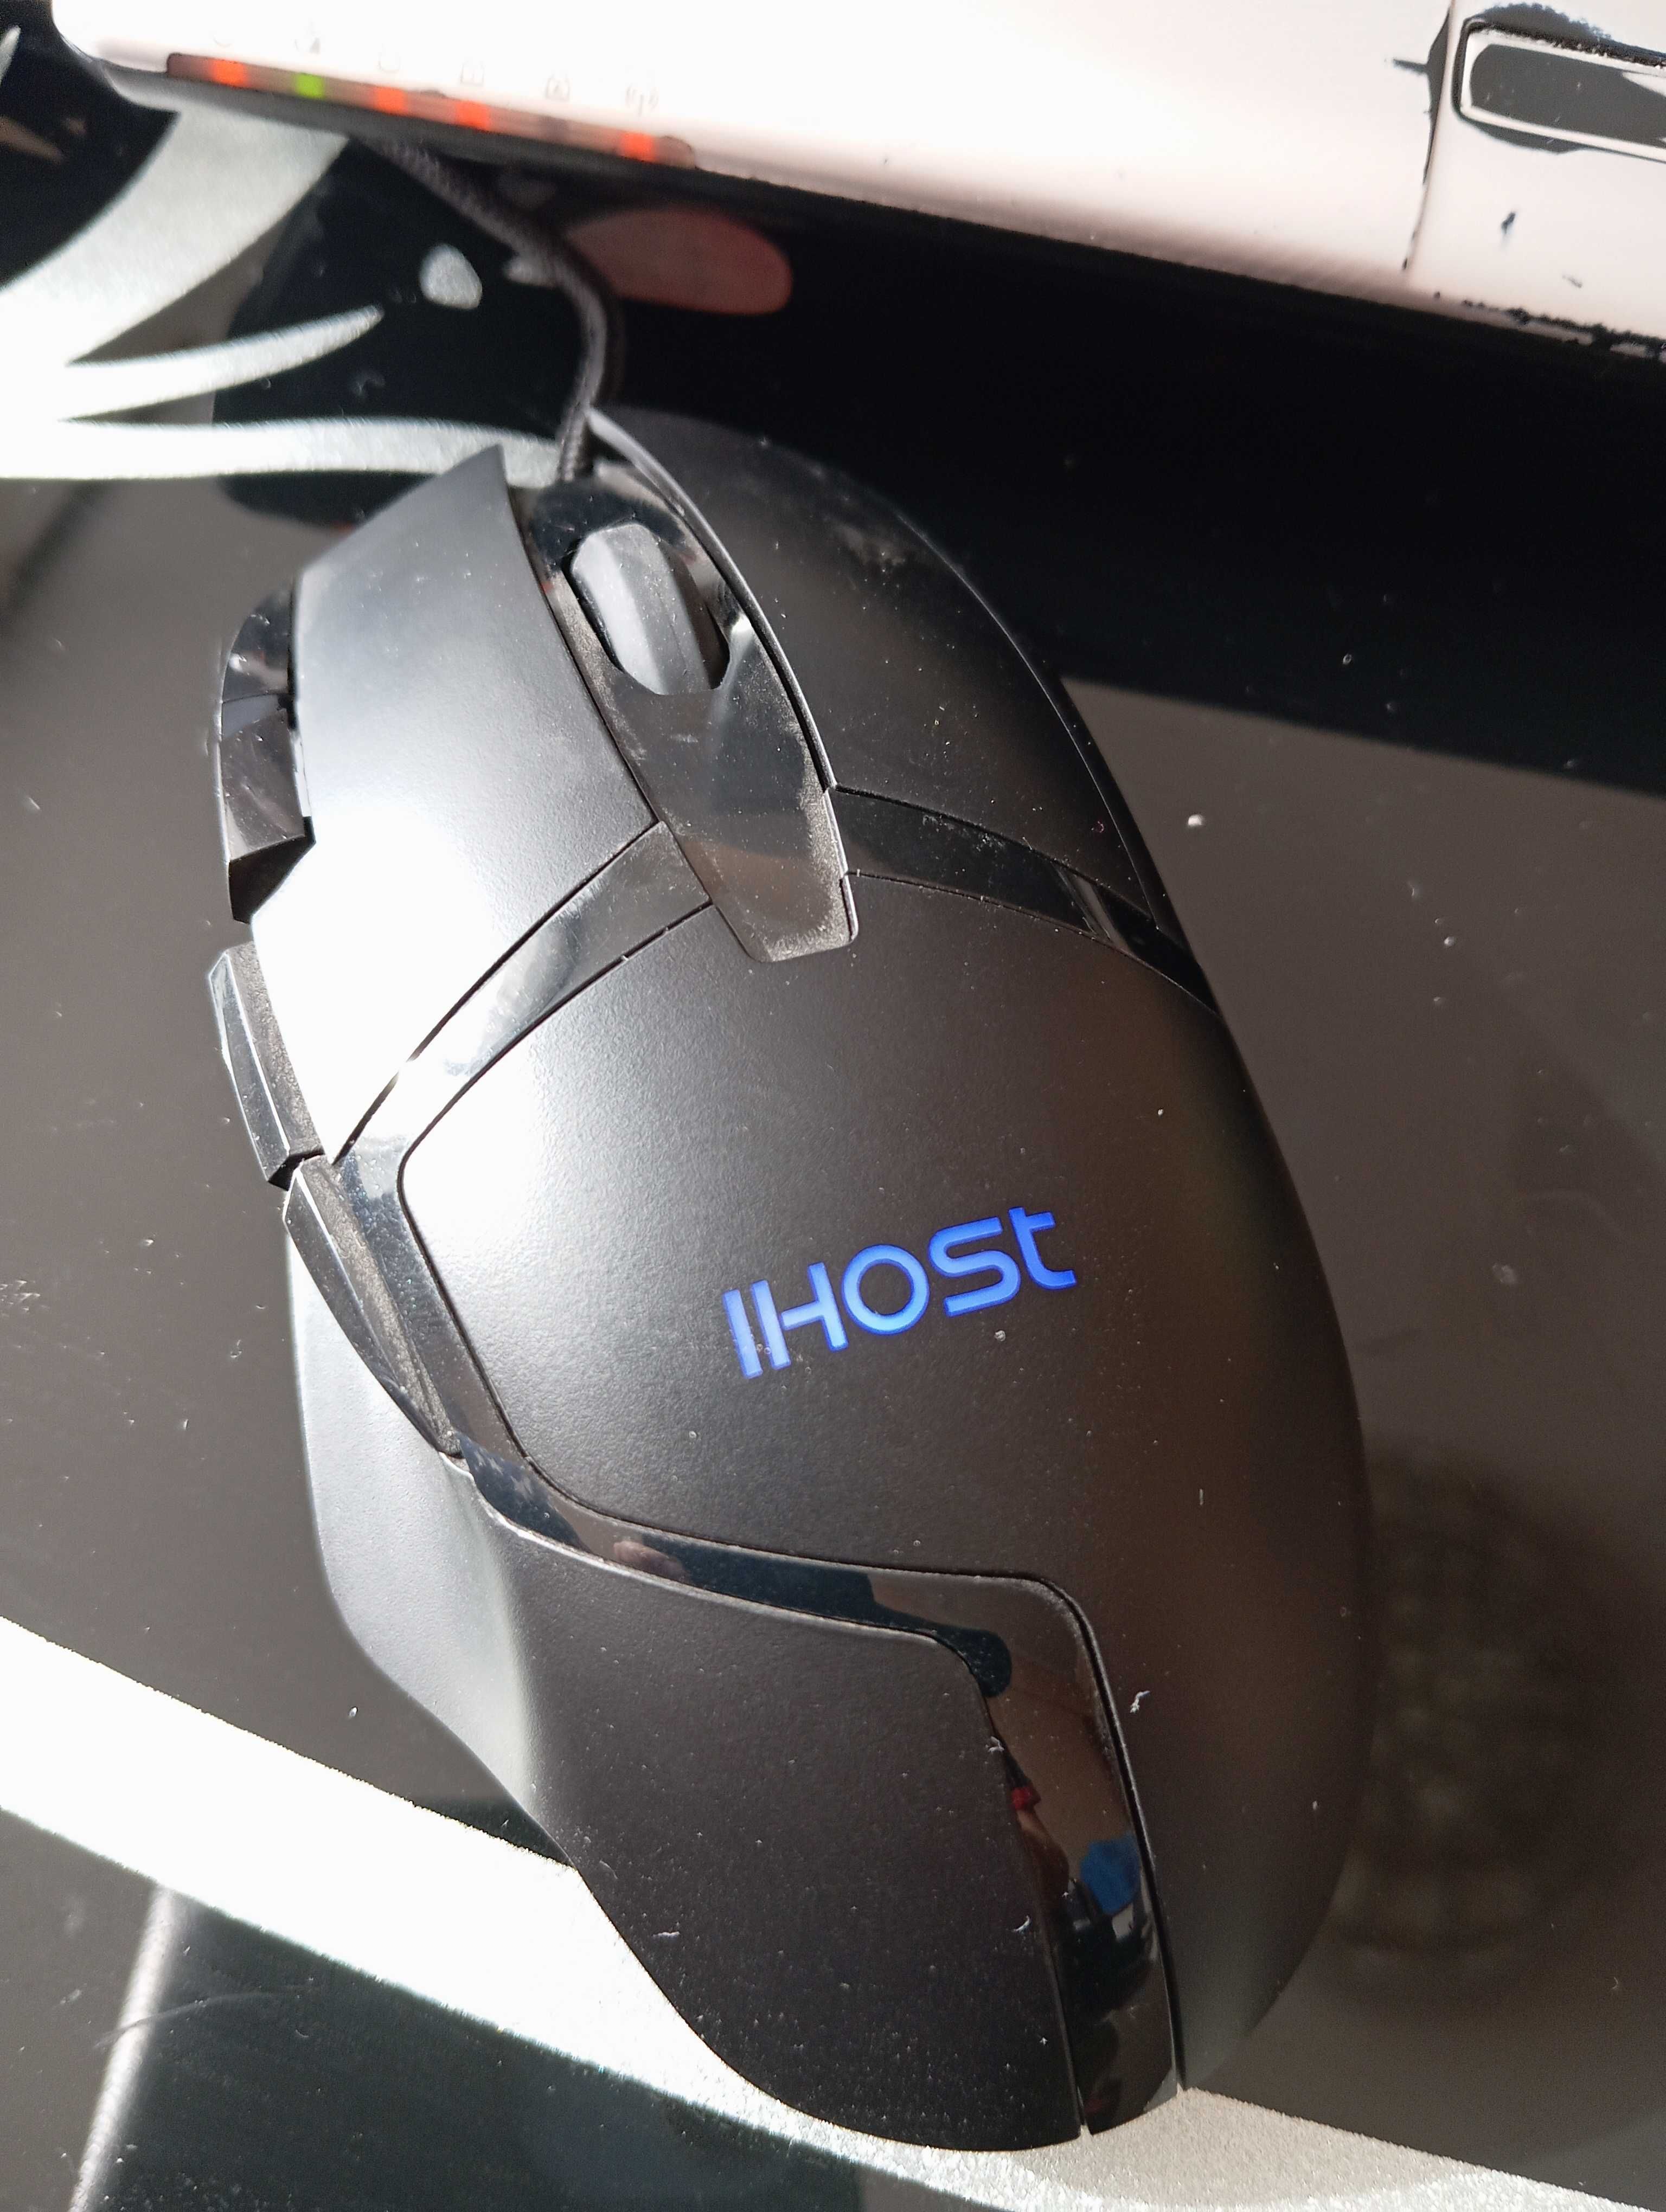 Игровая компьютерная мышка IHOST G402, 3200 DPI